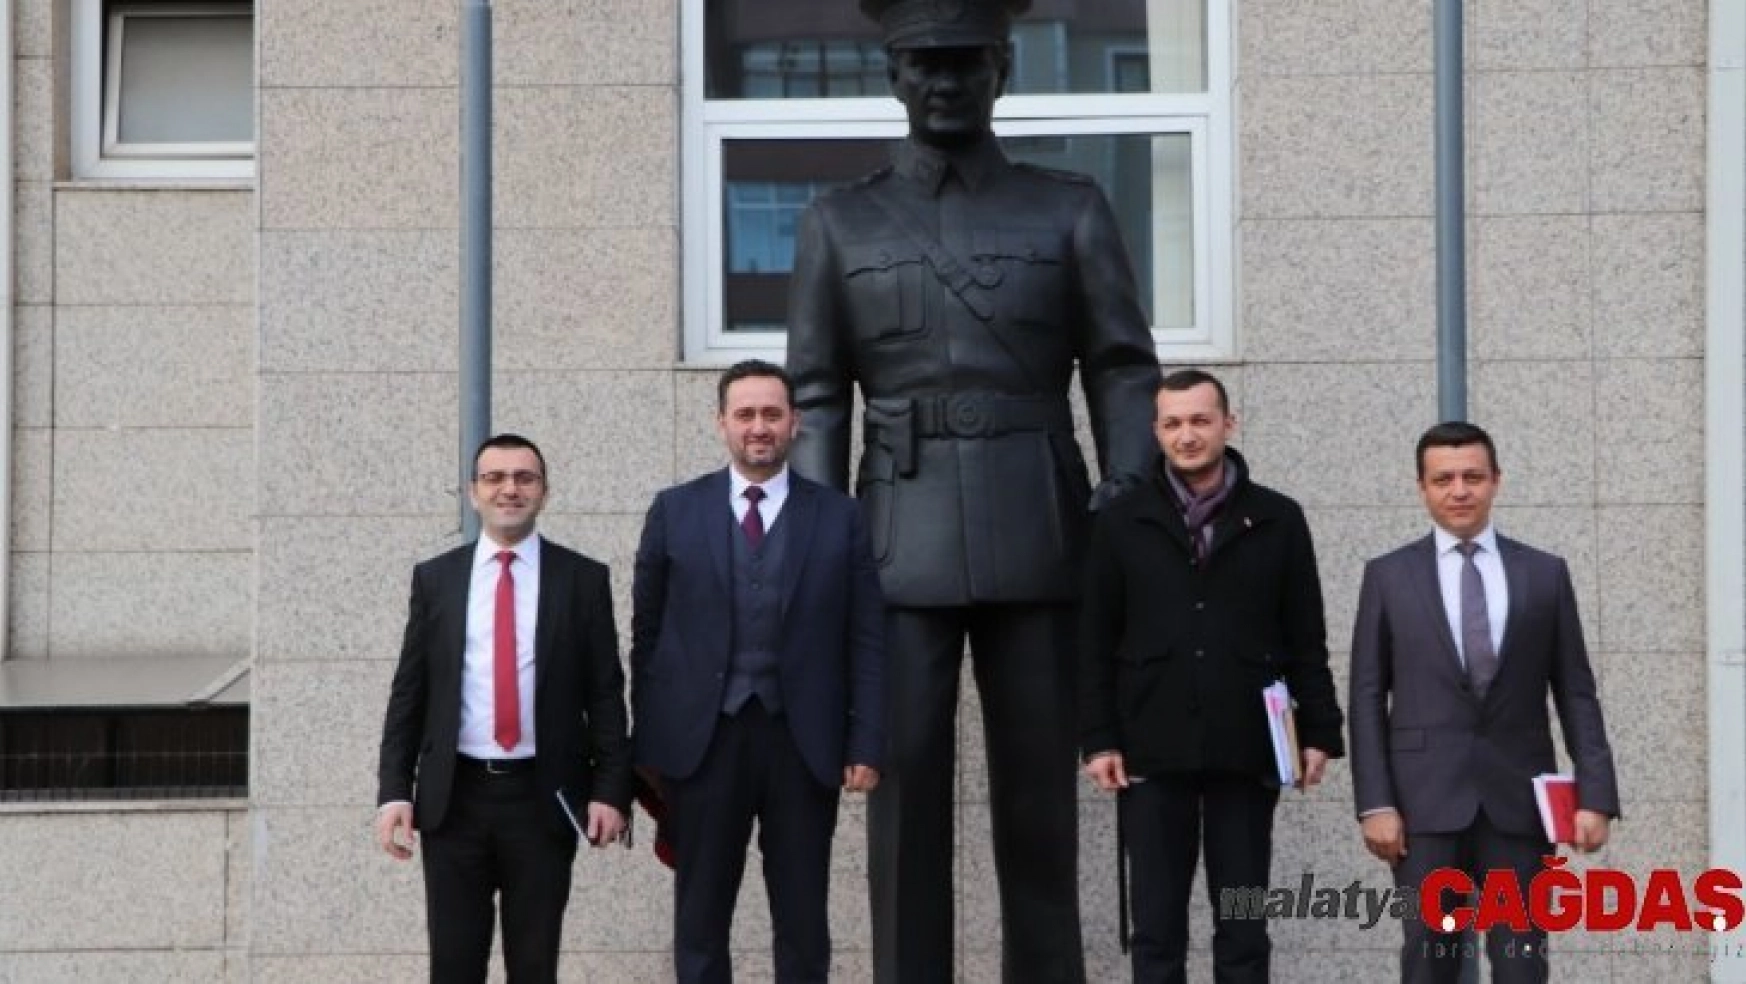 Akçakoca Belediyesi önüne Atatürk heykeli dikildi